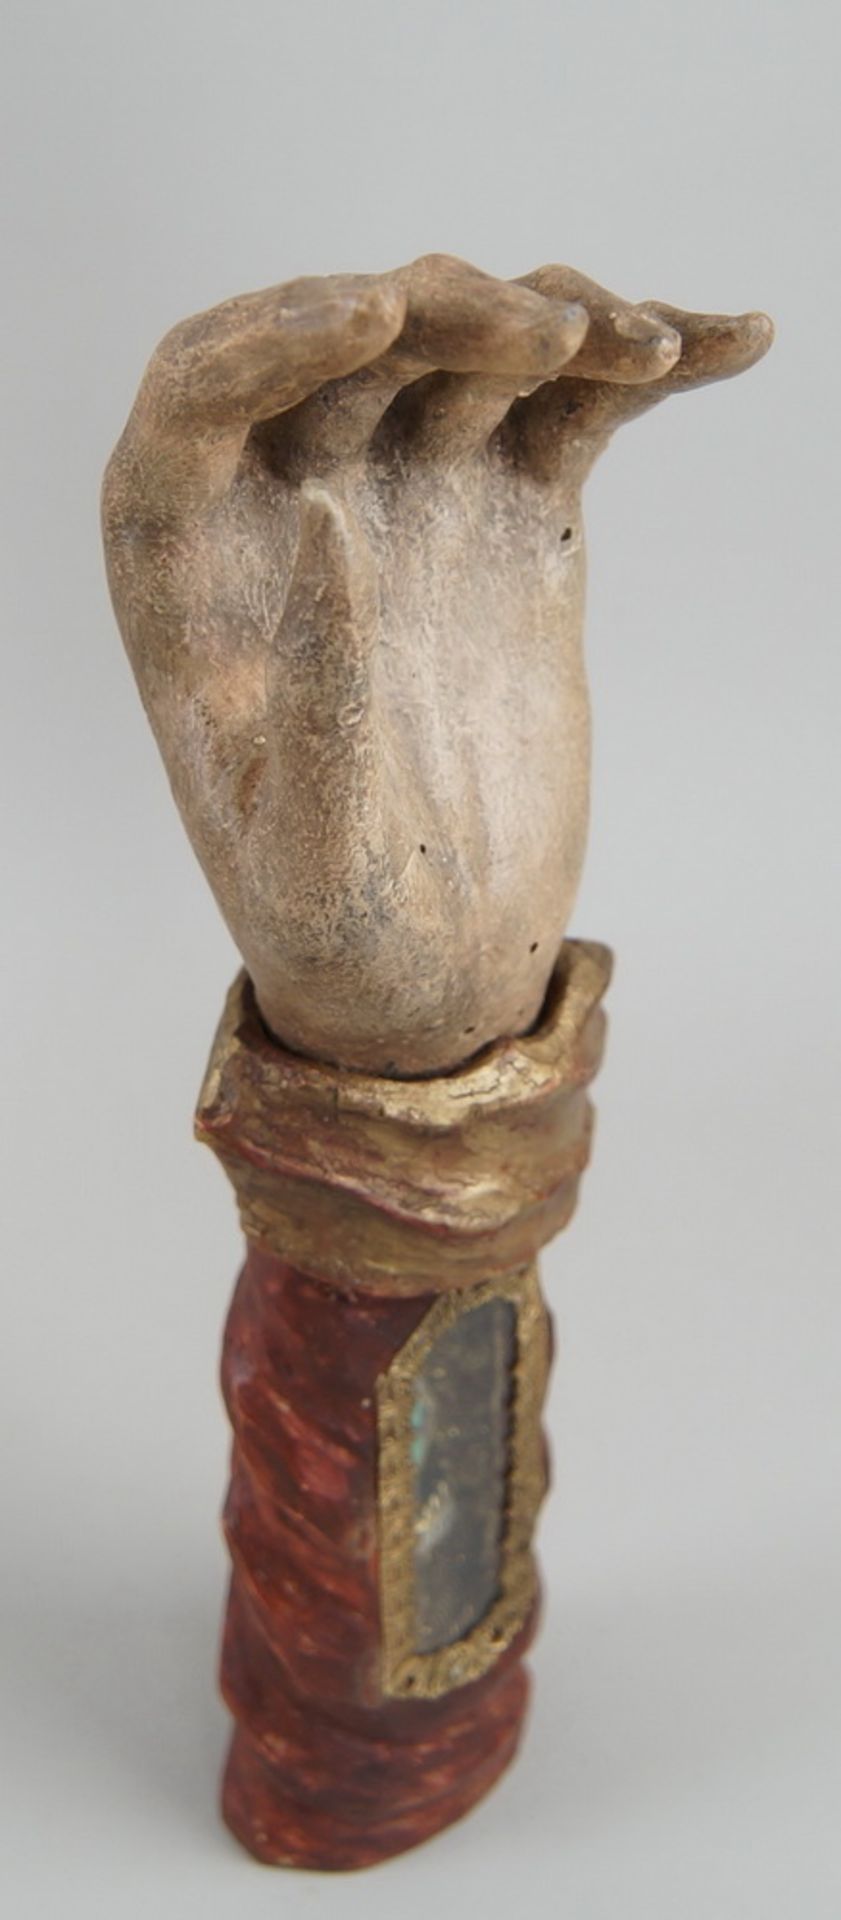 Grosse Reliquienhand, Holz geschnitzt und gefasst, Reliquie hinter Glas, St. Urban, H 31cm - Bild 6 aus 6